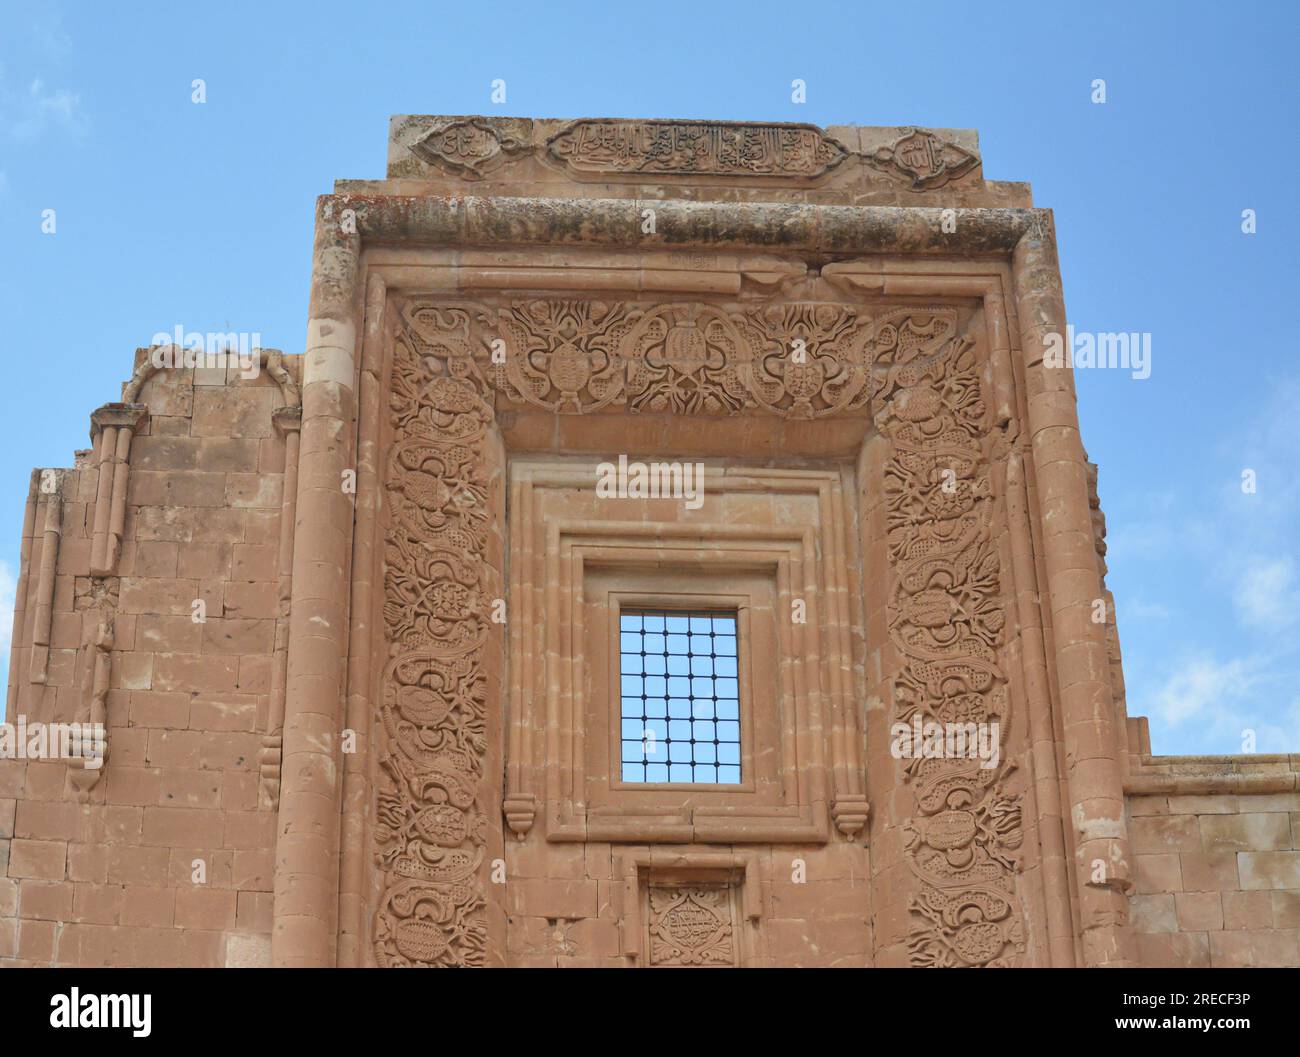 palais ishak pacha à dogubayazit, agri, turkiye. Décoré avec des écrits d'art ottoman ou islamique sur le mur, des versets arabes et des mots islamiques. Banque D'Images